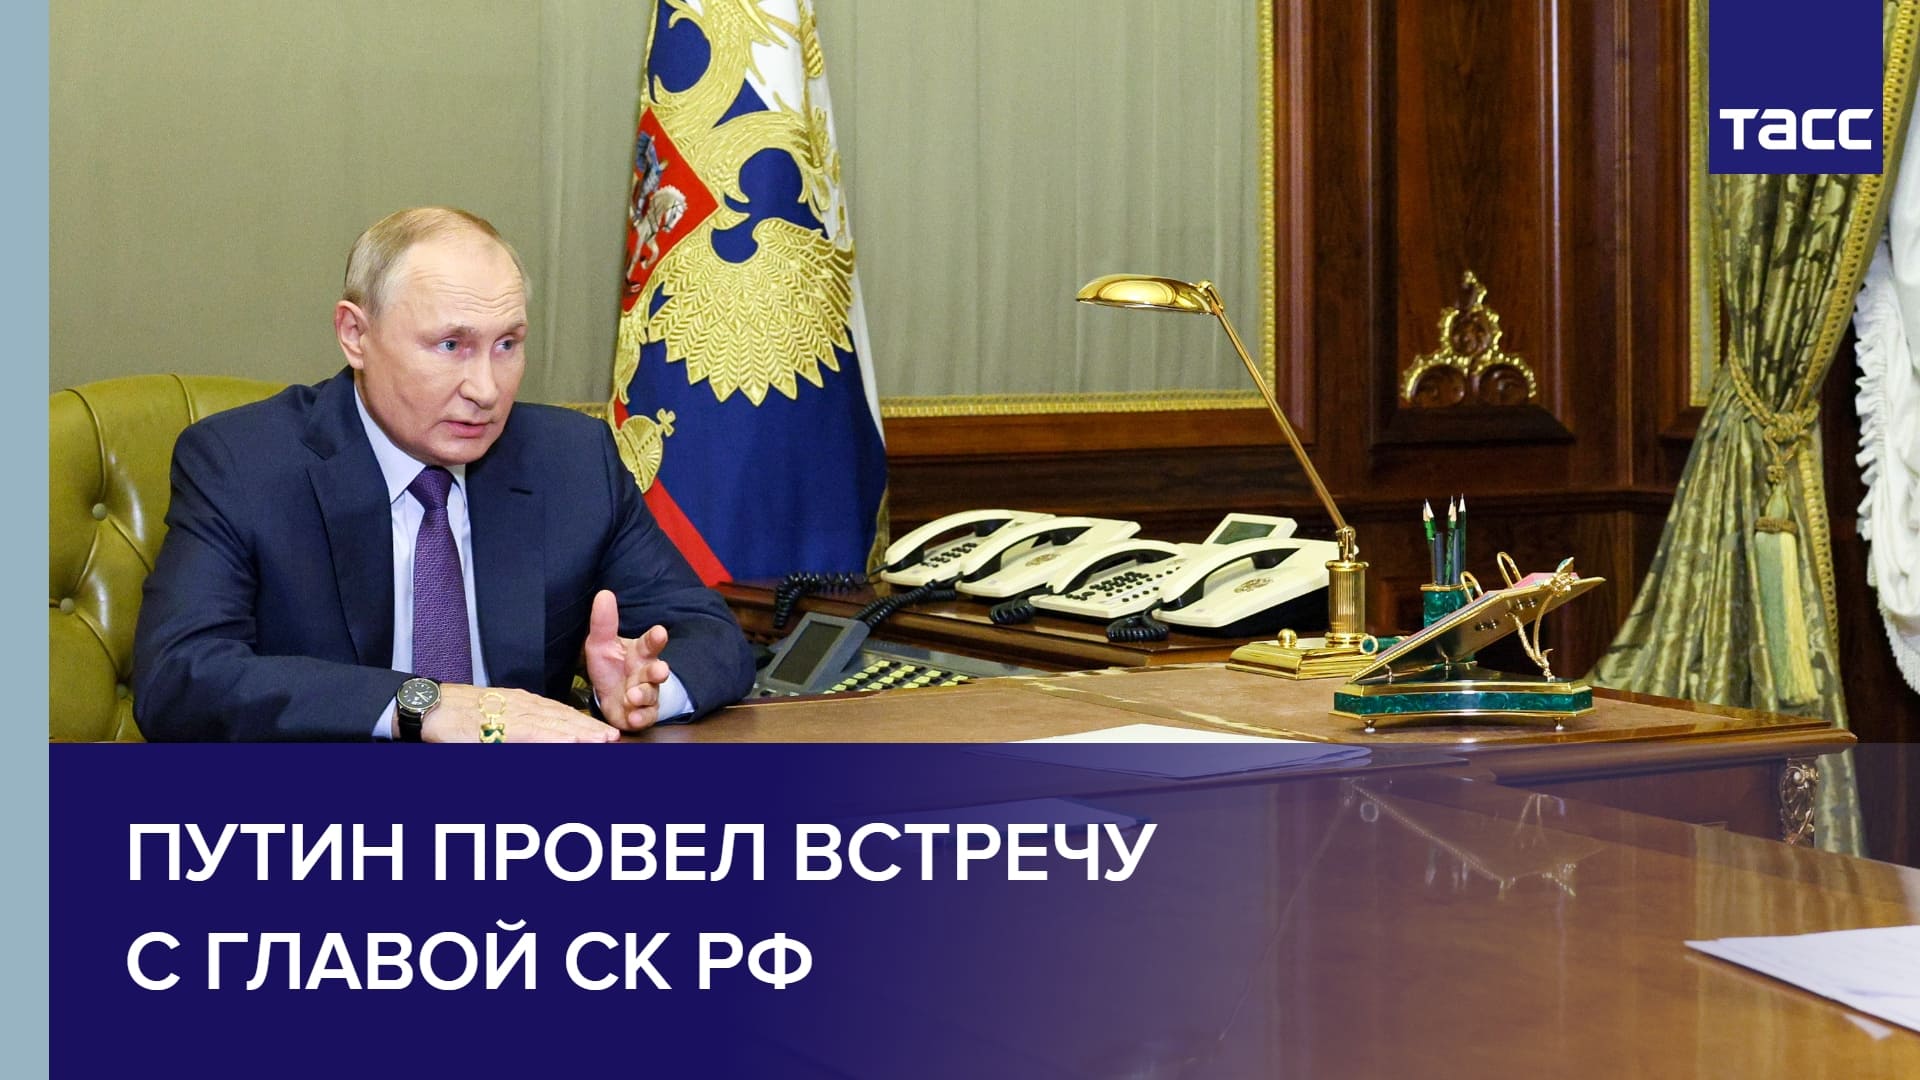 Путин провел встречу с главой СК РФ